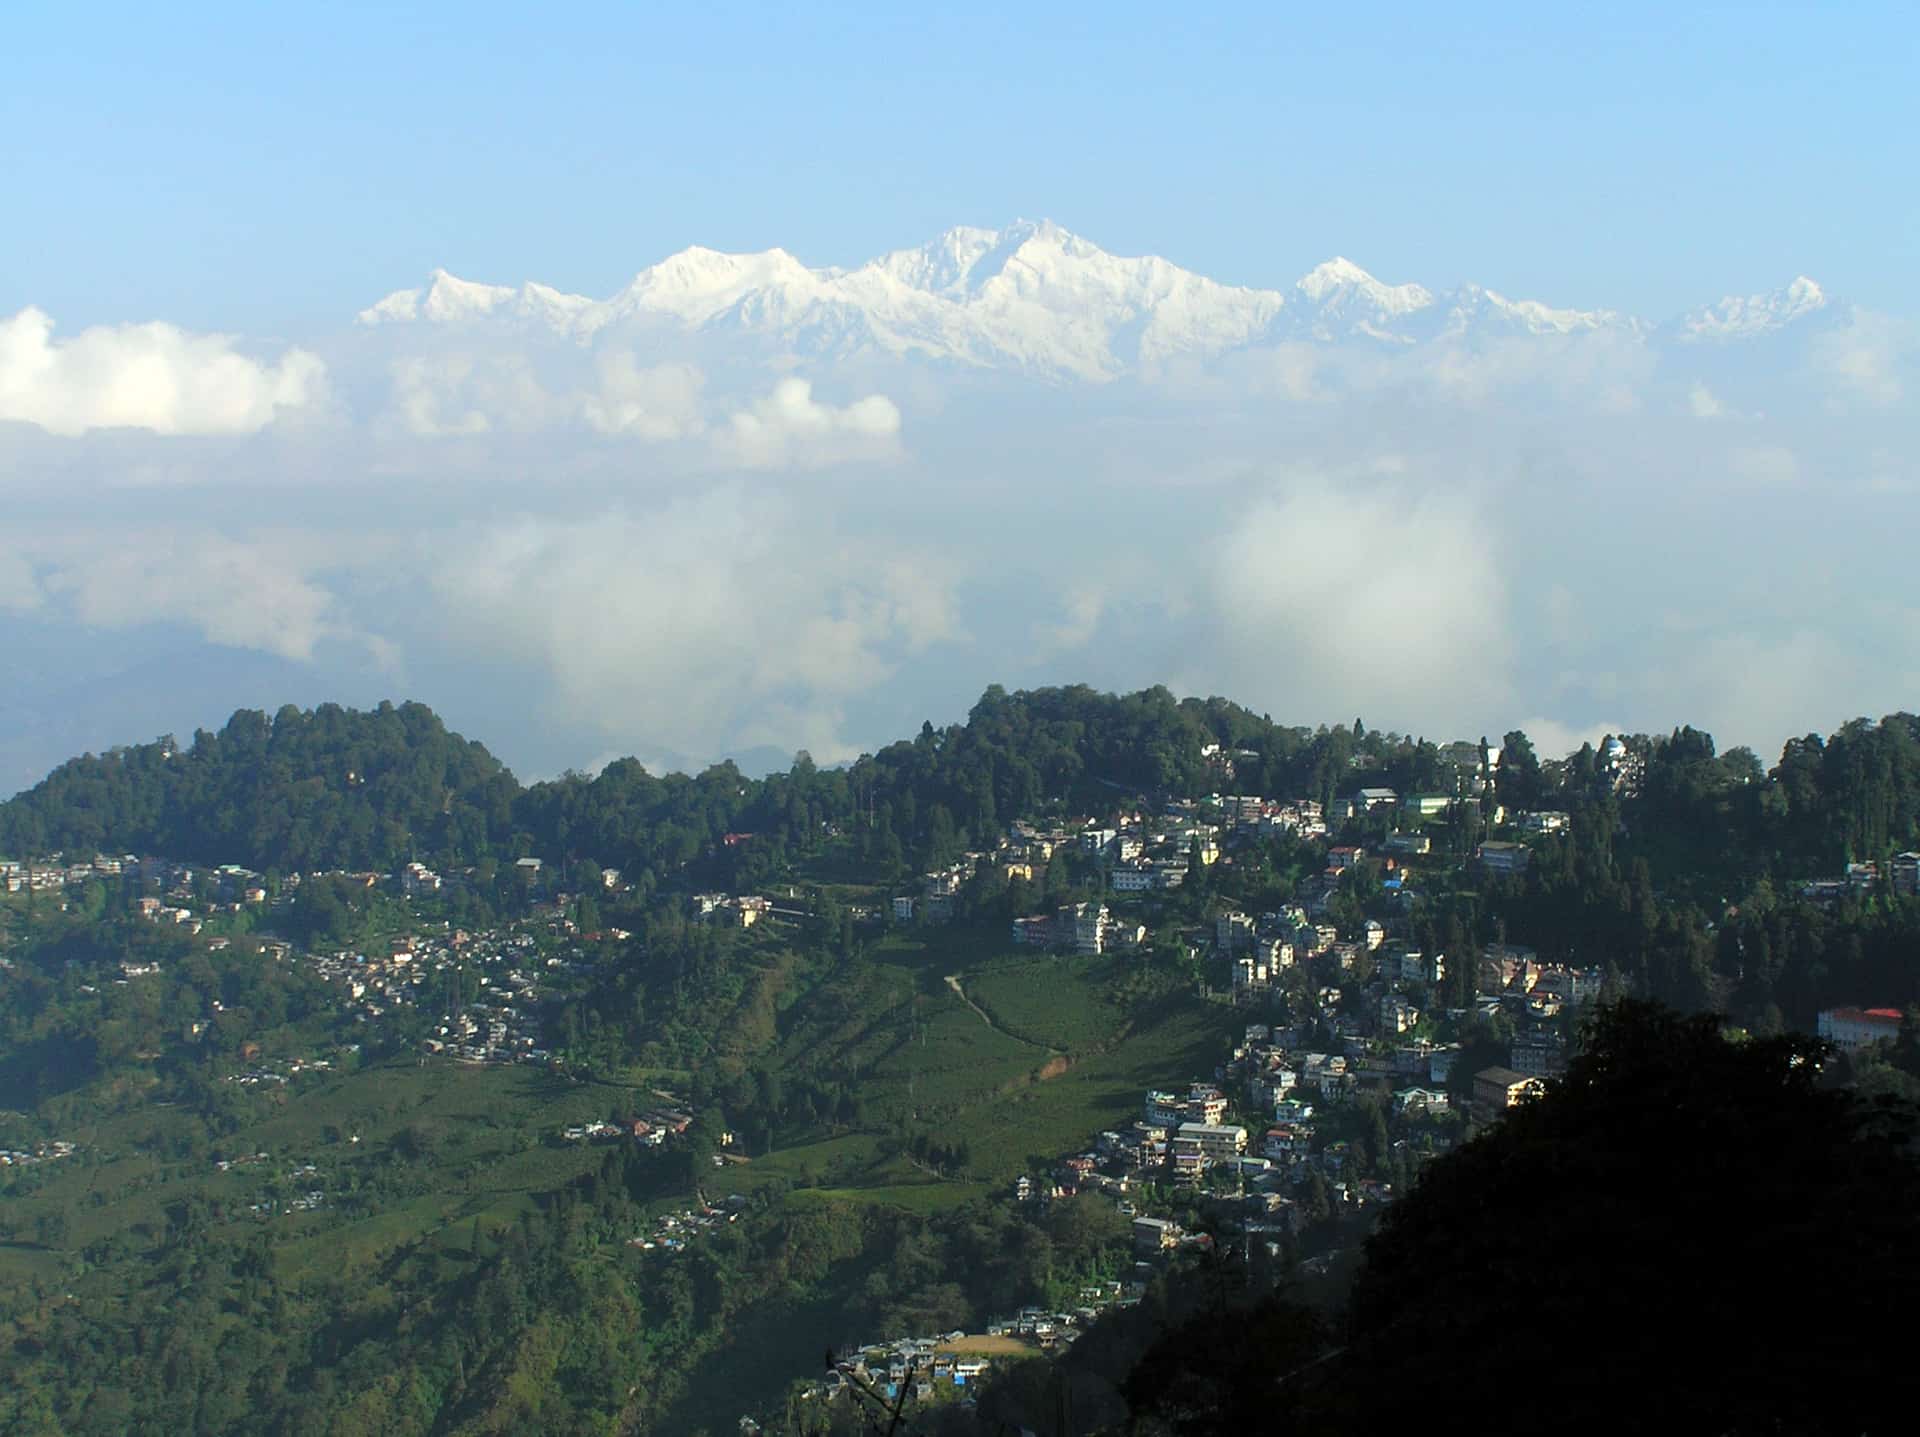 sikkim.ch | Nordostinidien und Sikkim Reisen - Bild zu Come with us on an extraordinary journey through North India!